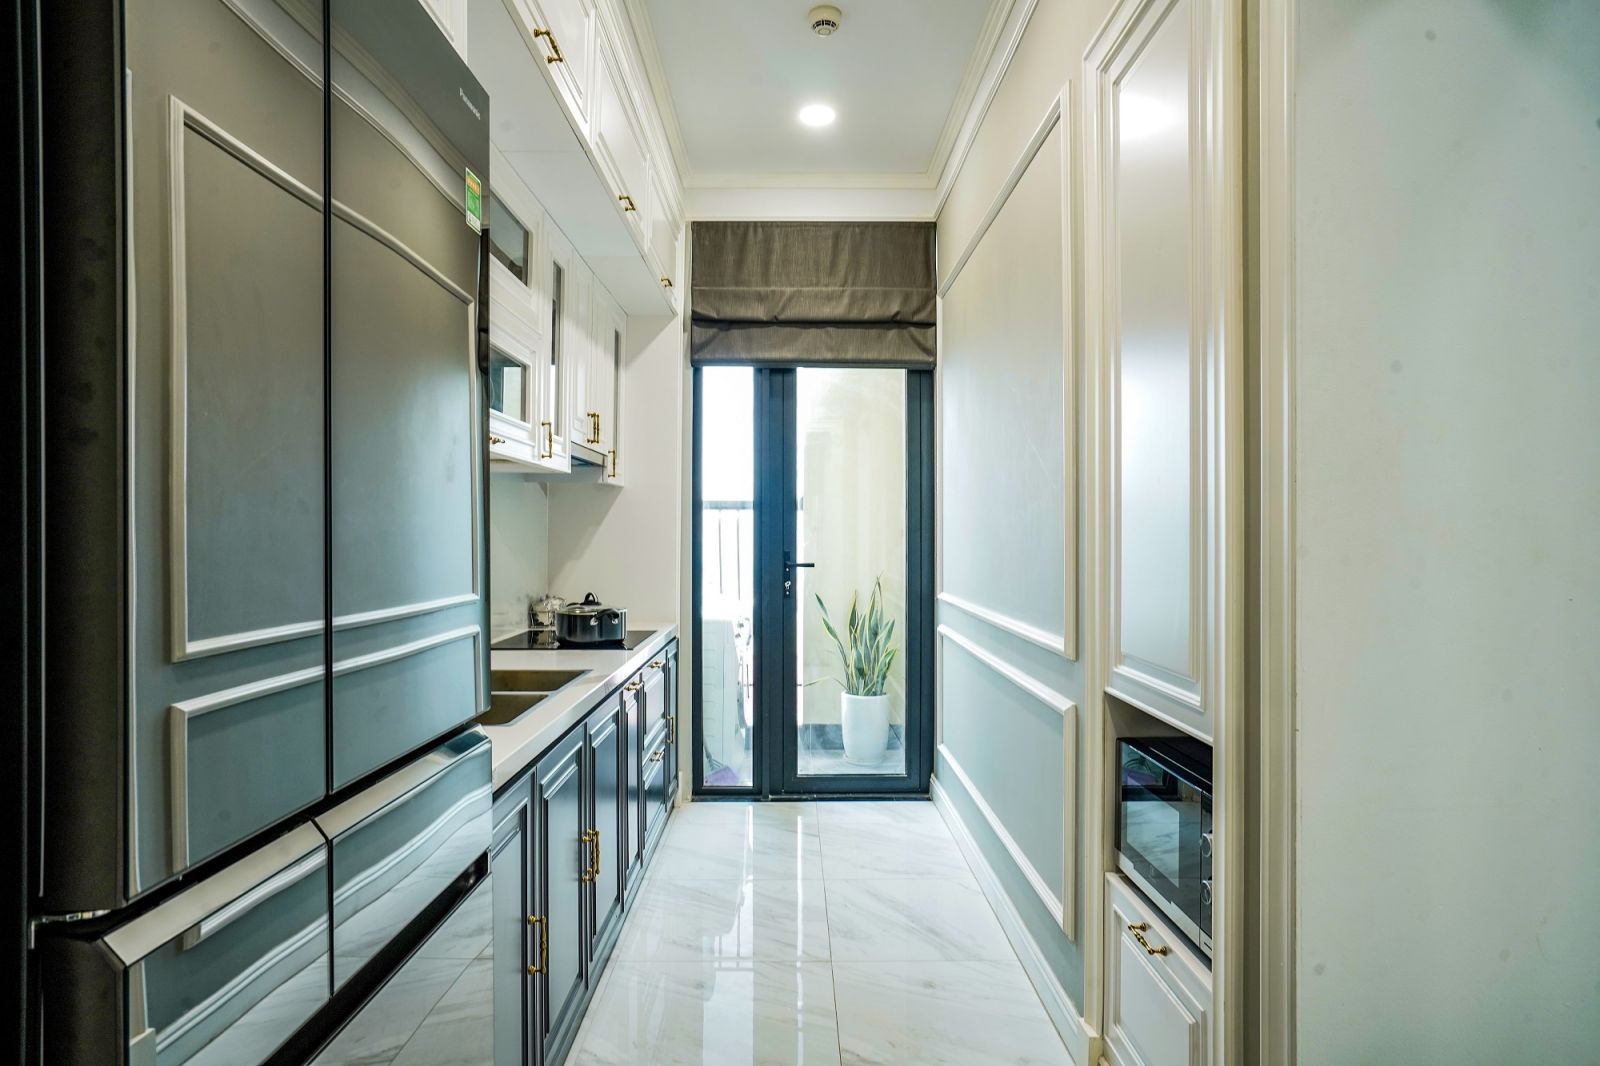 Khu vực bếp thiết kế khéo léo để kết nối ra logia nhỏ nhằm đảm bảo thông thoáng và lấy ánh sáng tự nhiên cho căn hộ